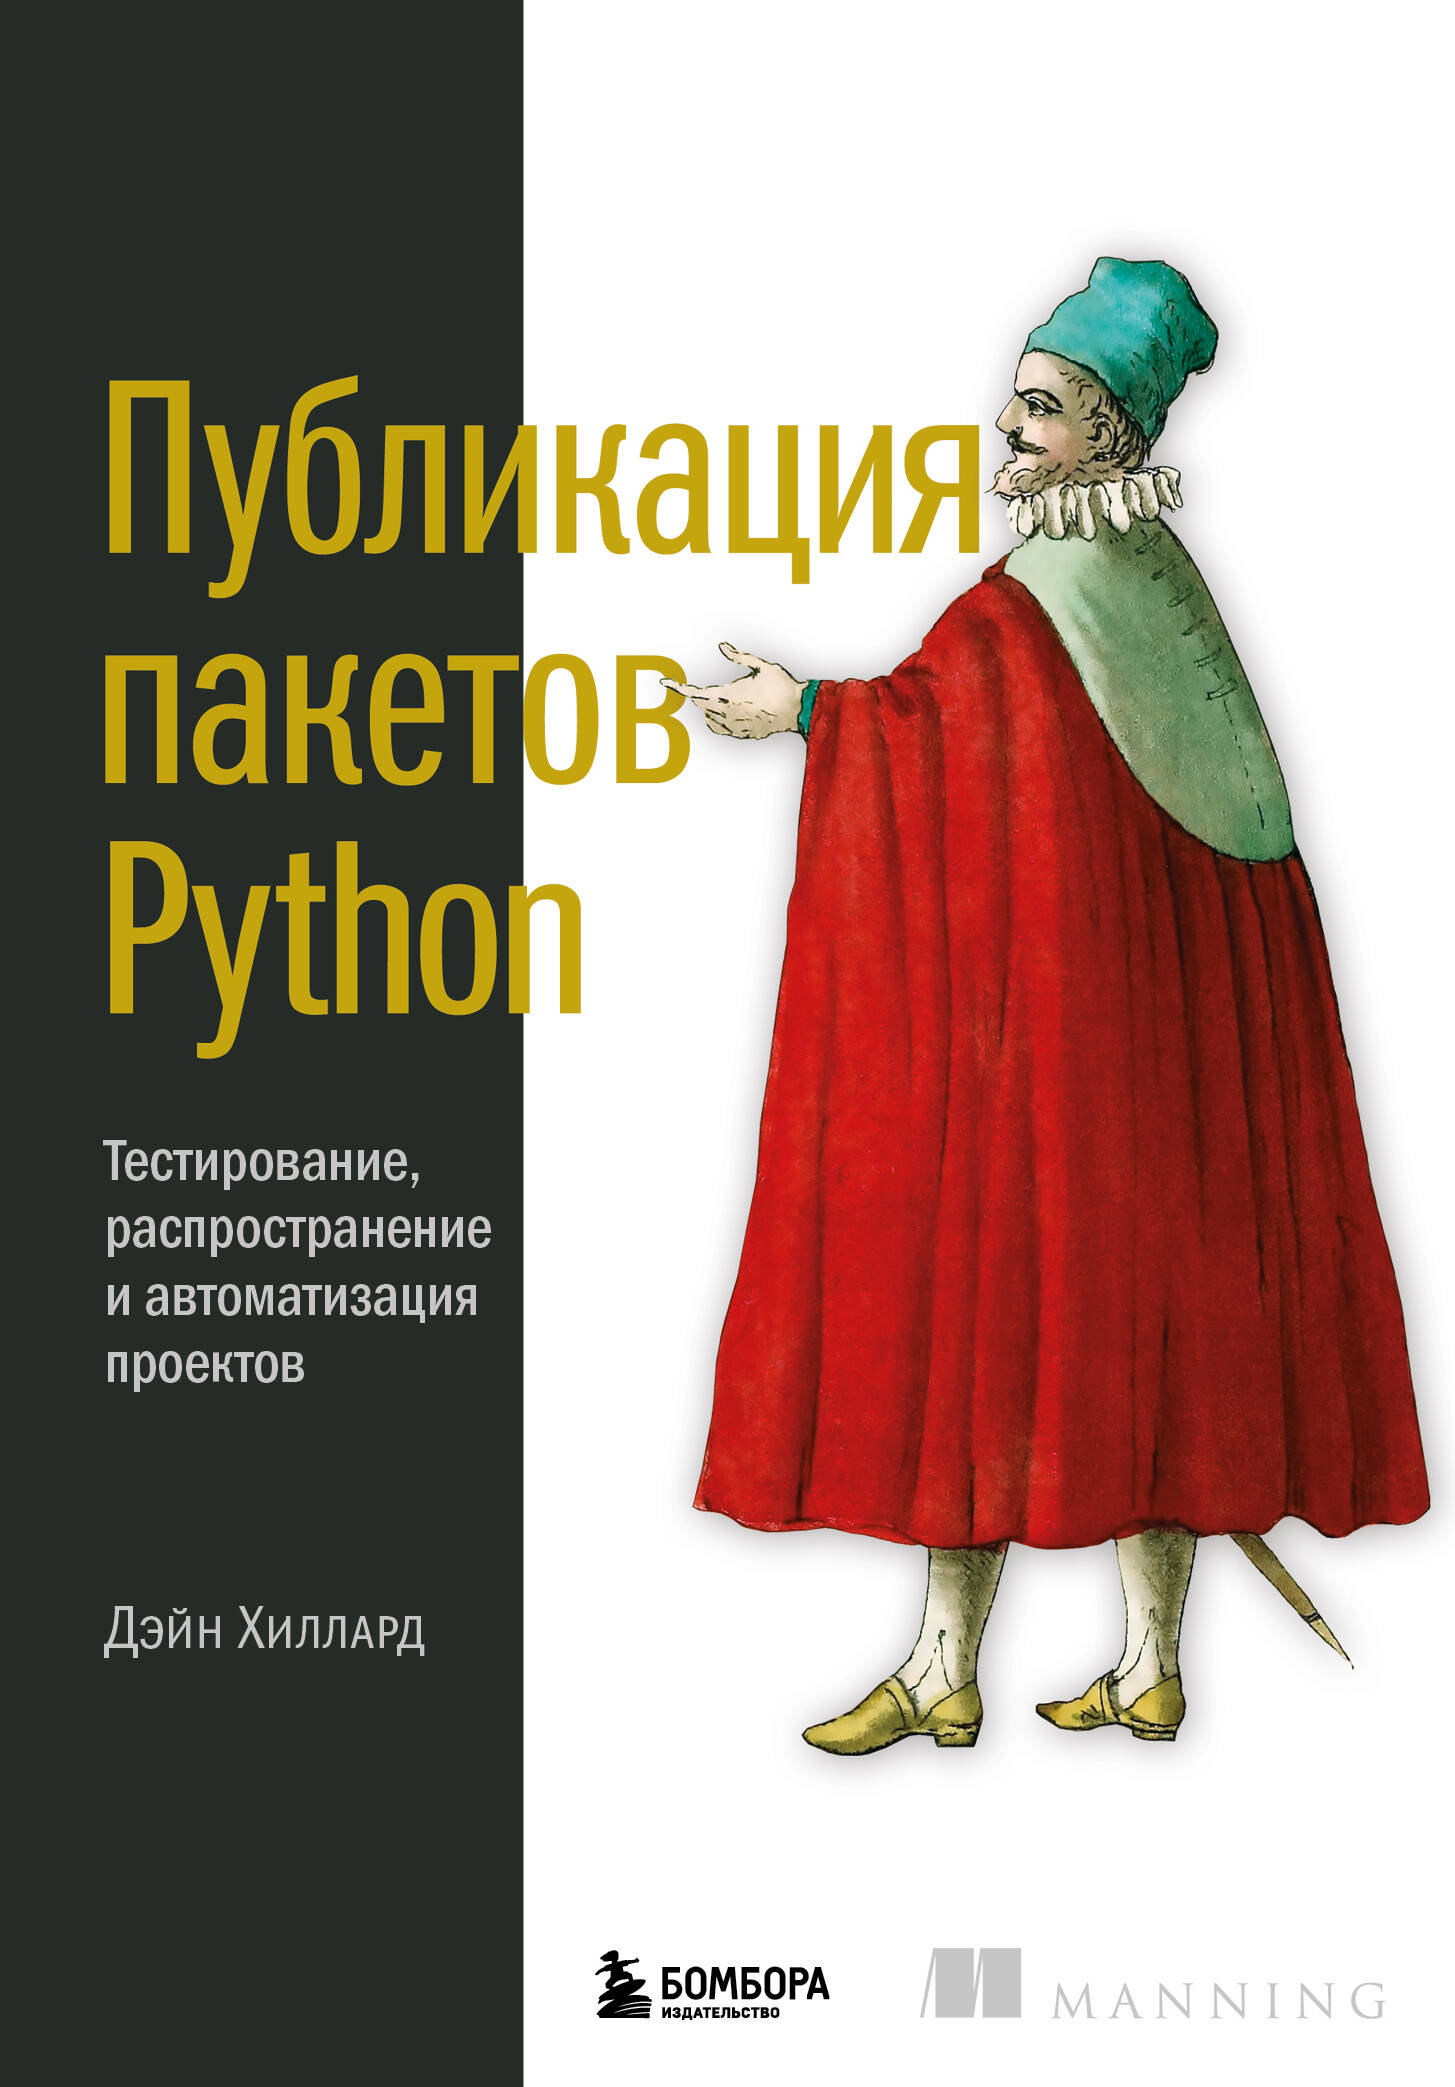   Python     